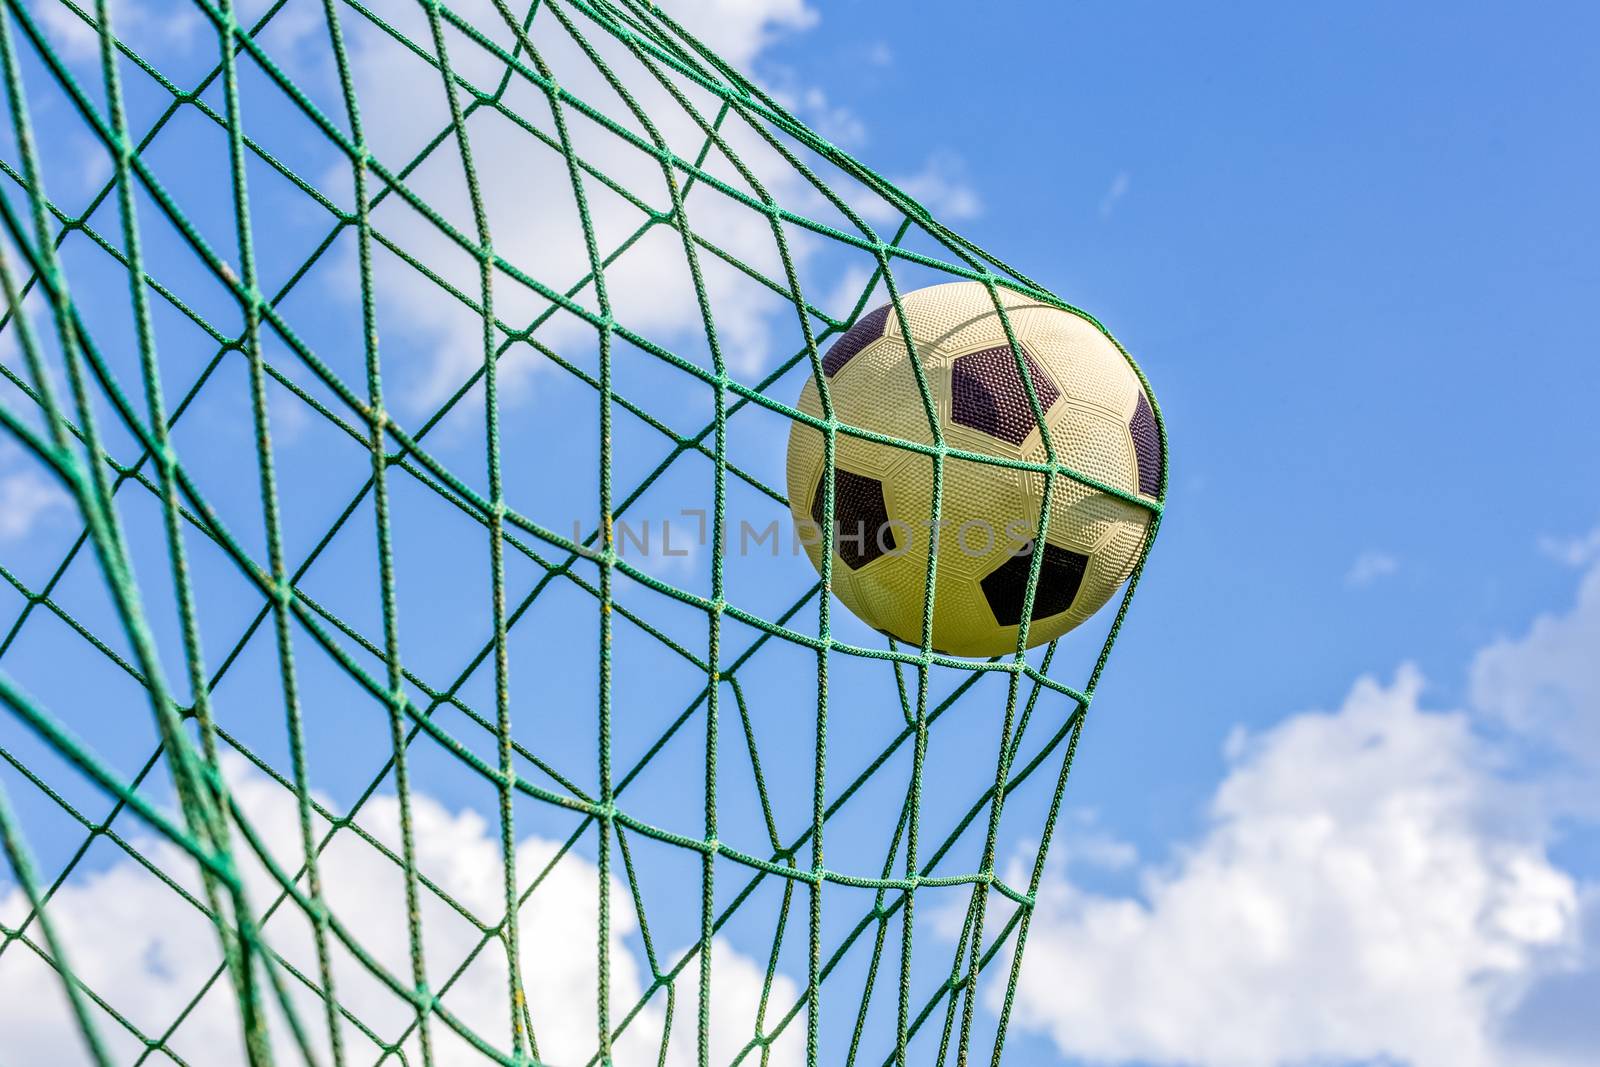 Football shot in goal net by BenSchonewille